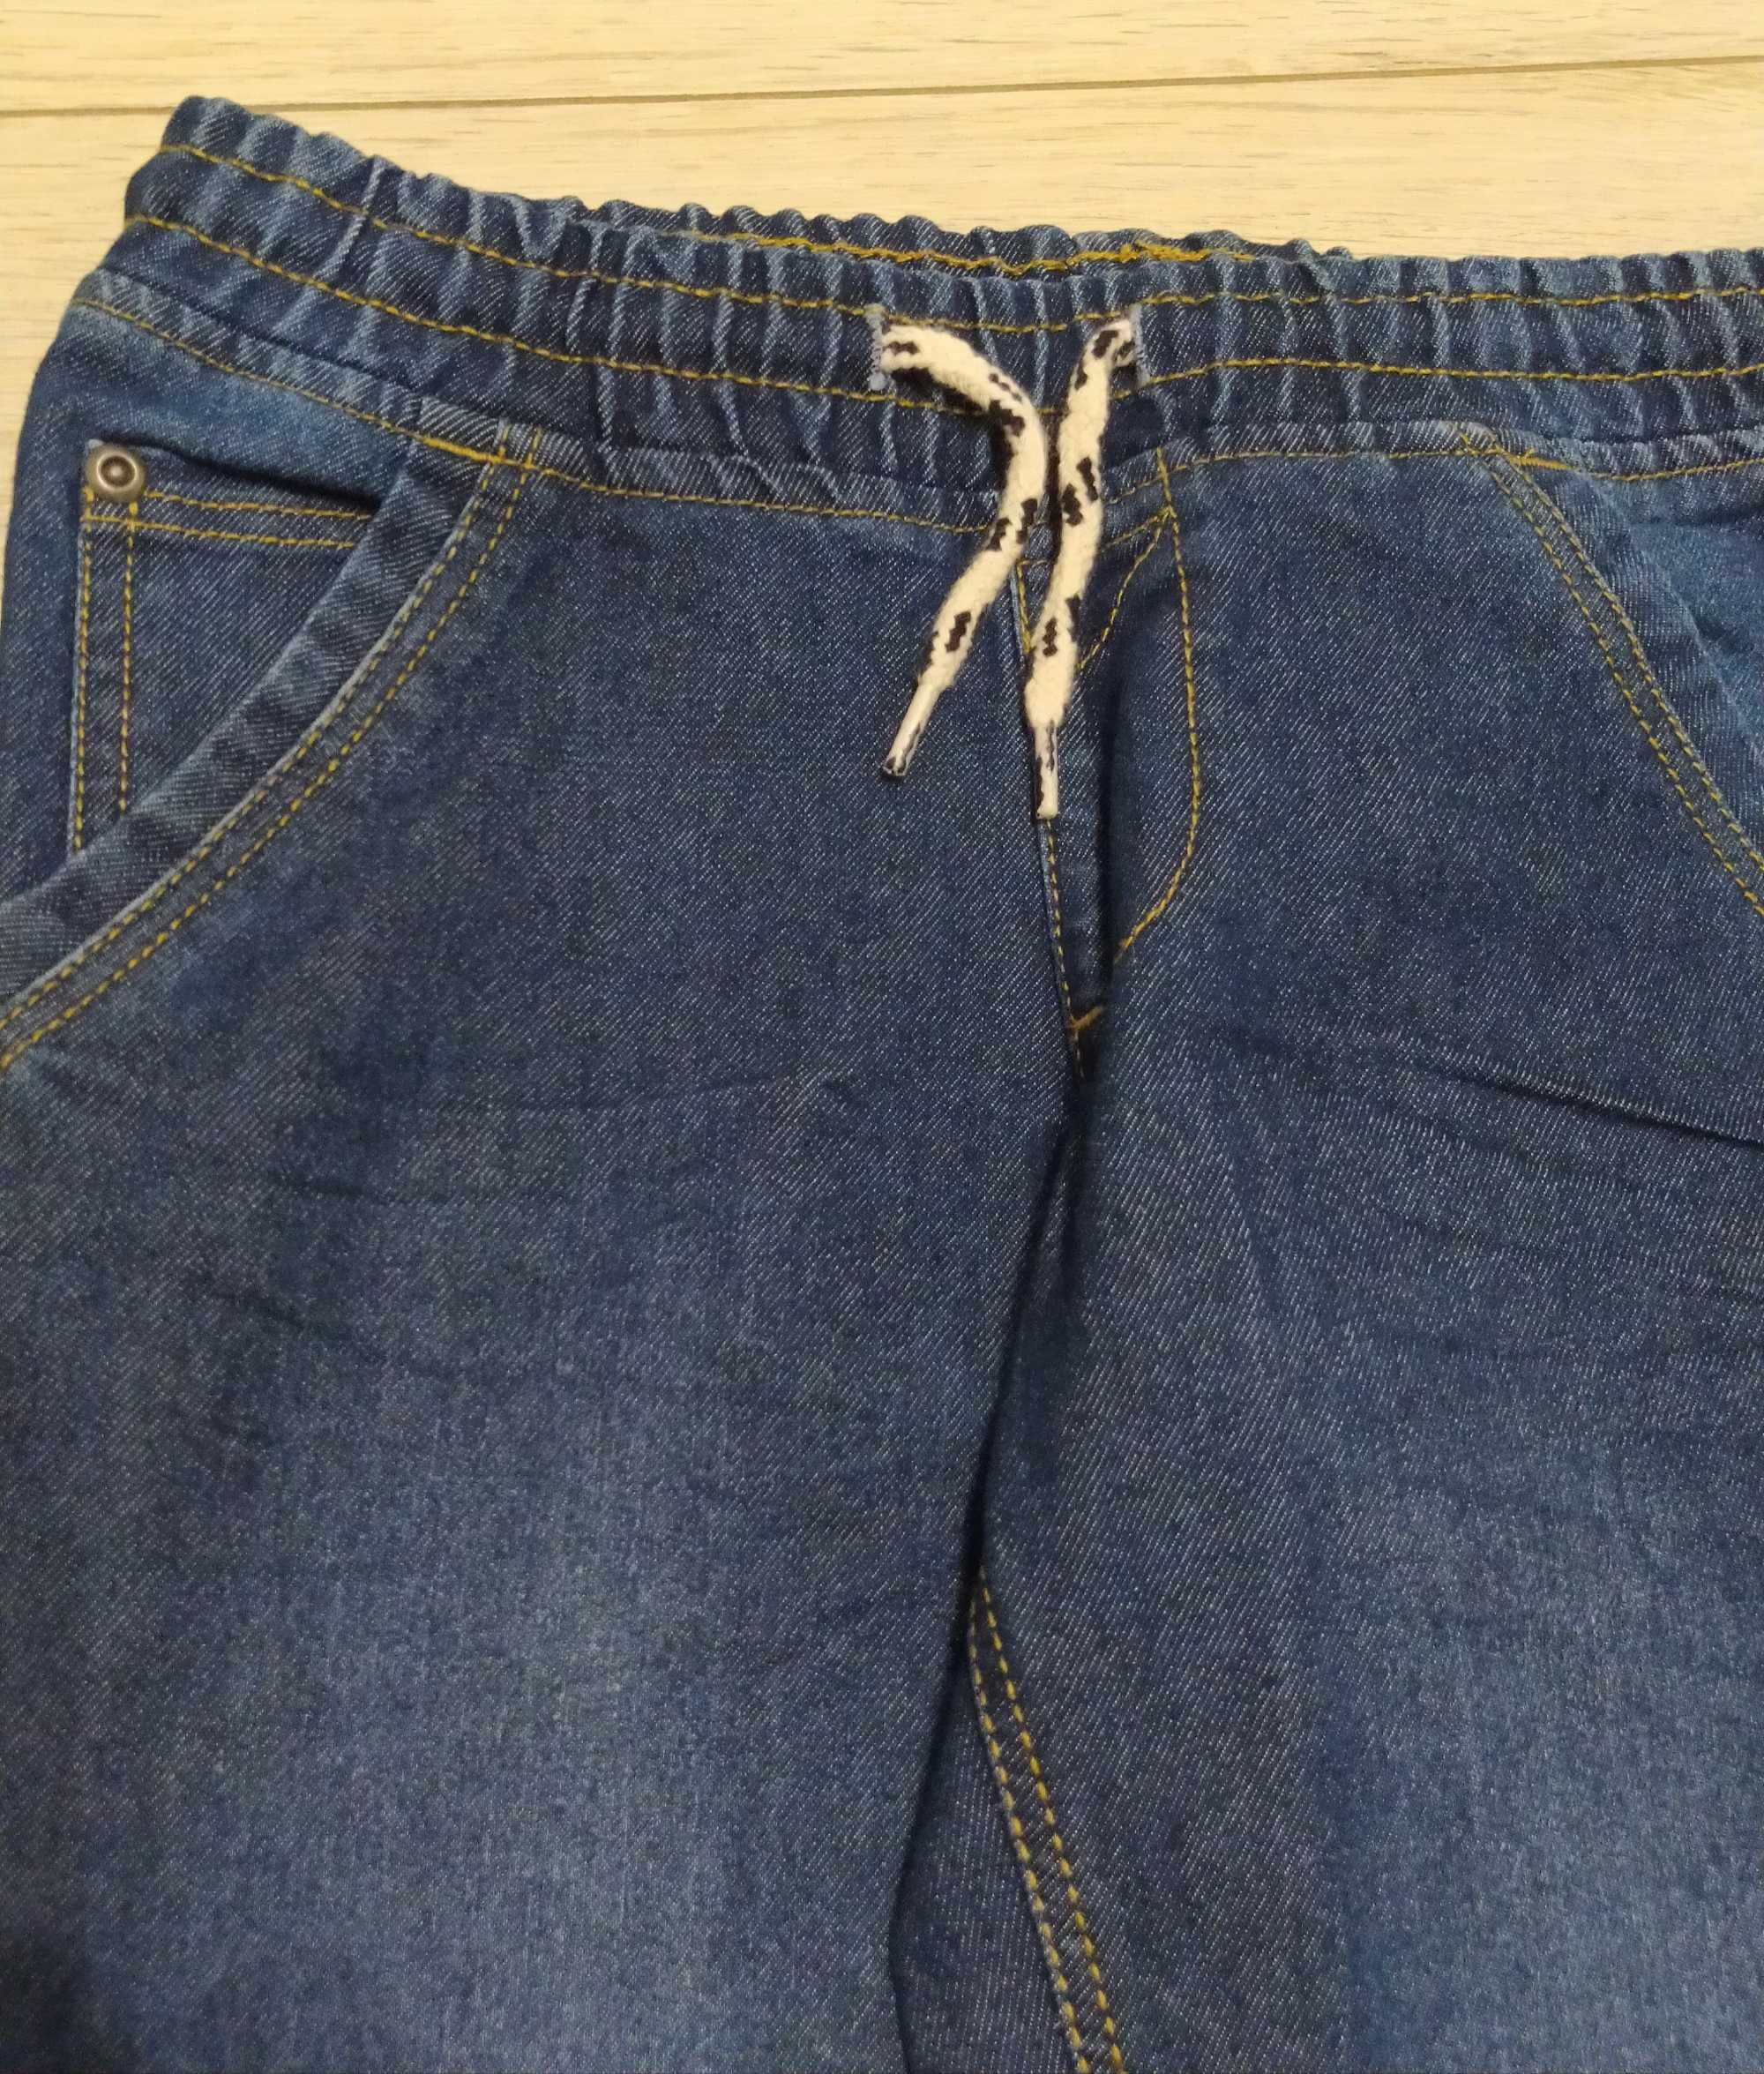 Spodnie jeansowe Pepco 122 jak nowe